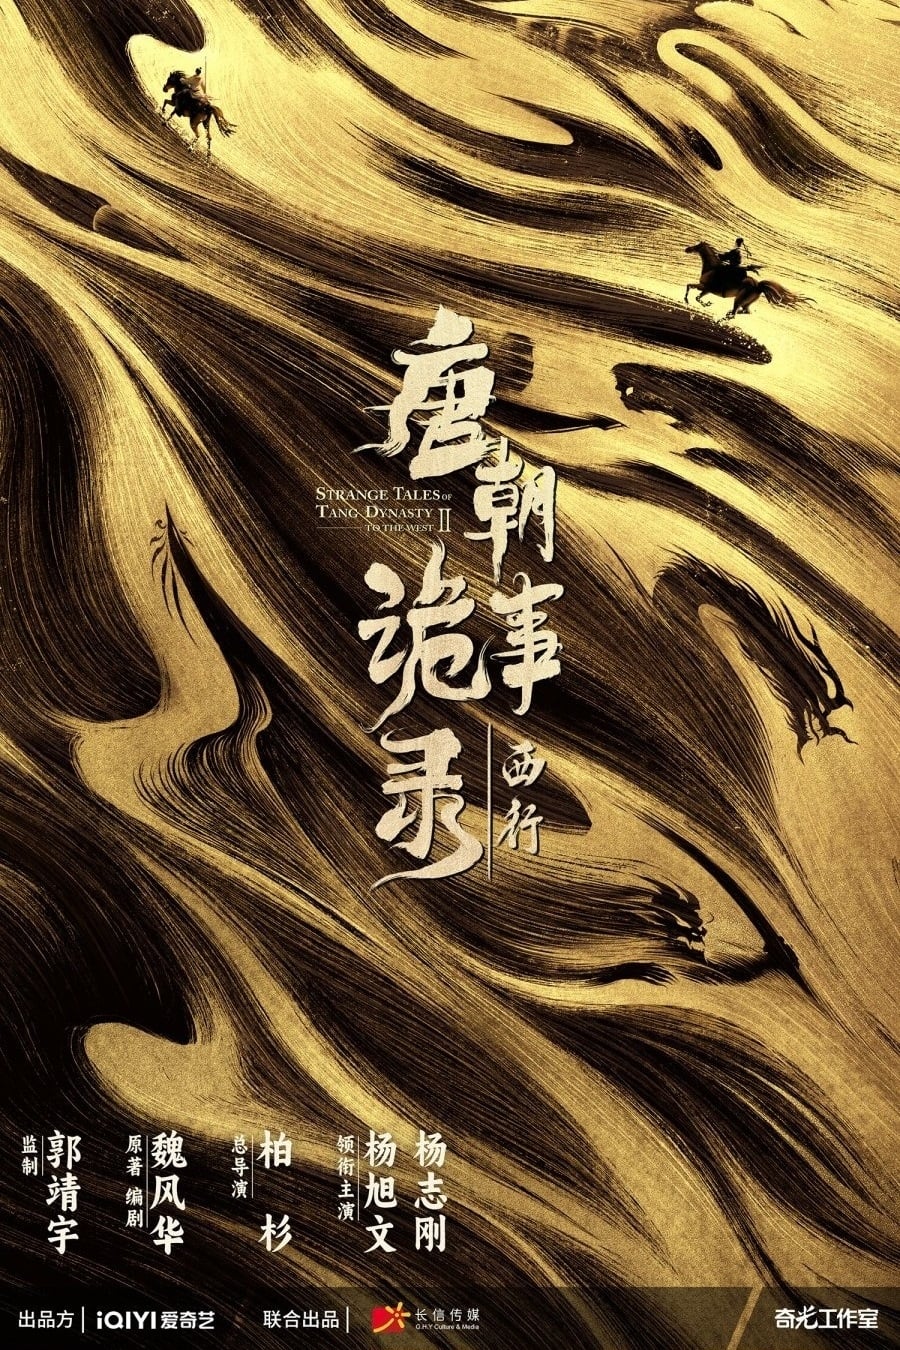 مسلسل Strange Tales of Tang Dynasty موسم 2 حلقة 6